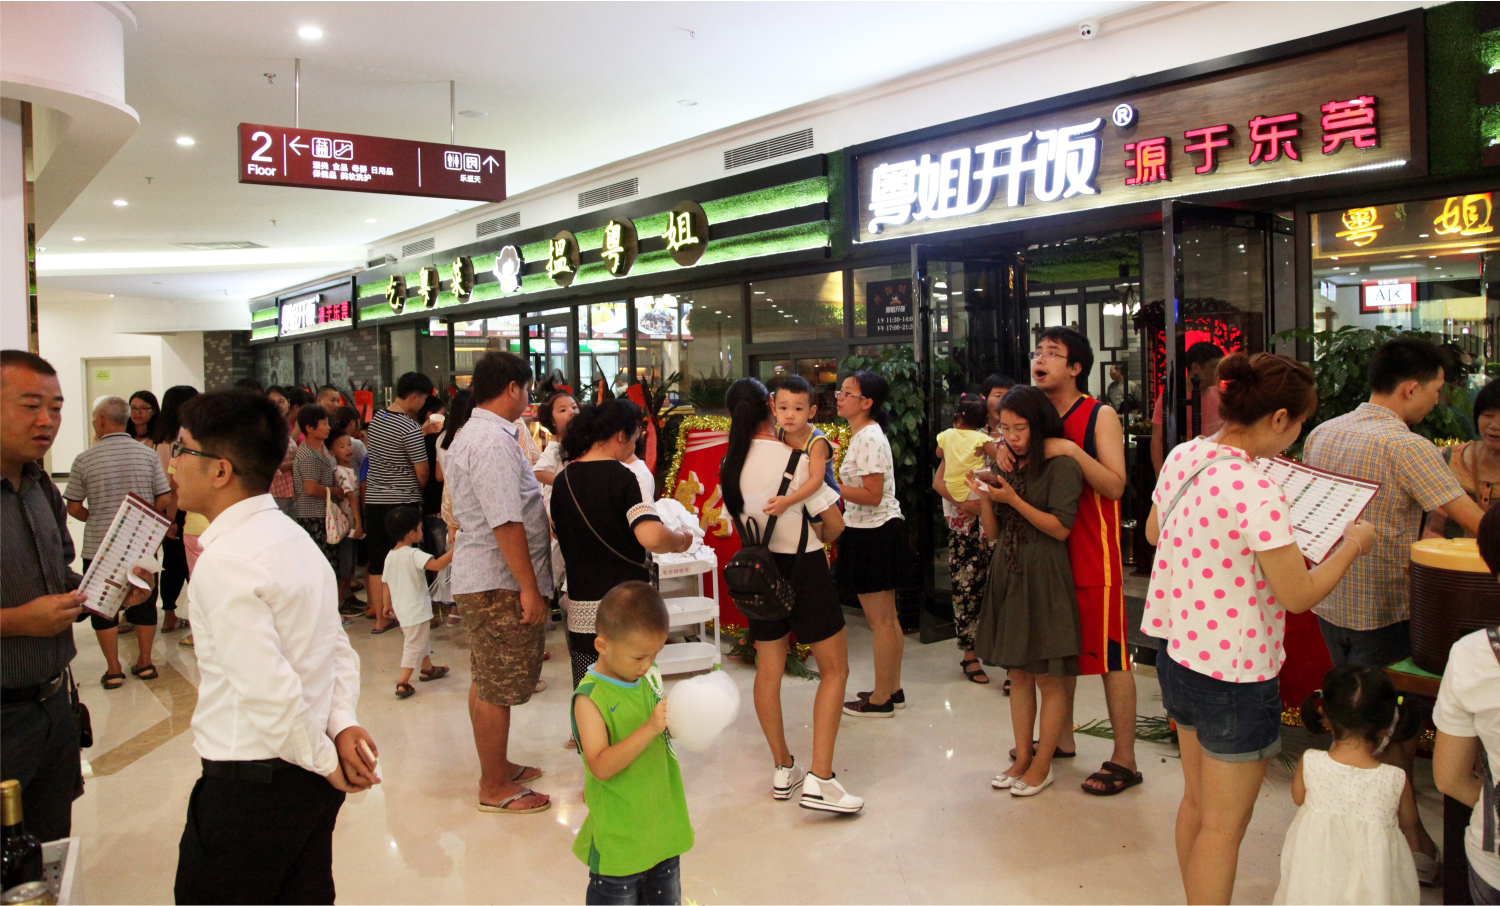 菜单规划怎样通过深圳餐饮策划，让更多的人知道你的餐厅？